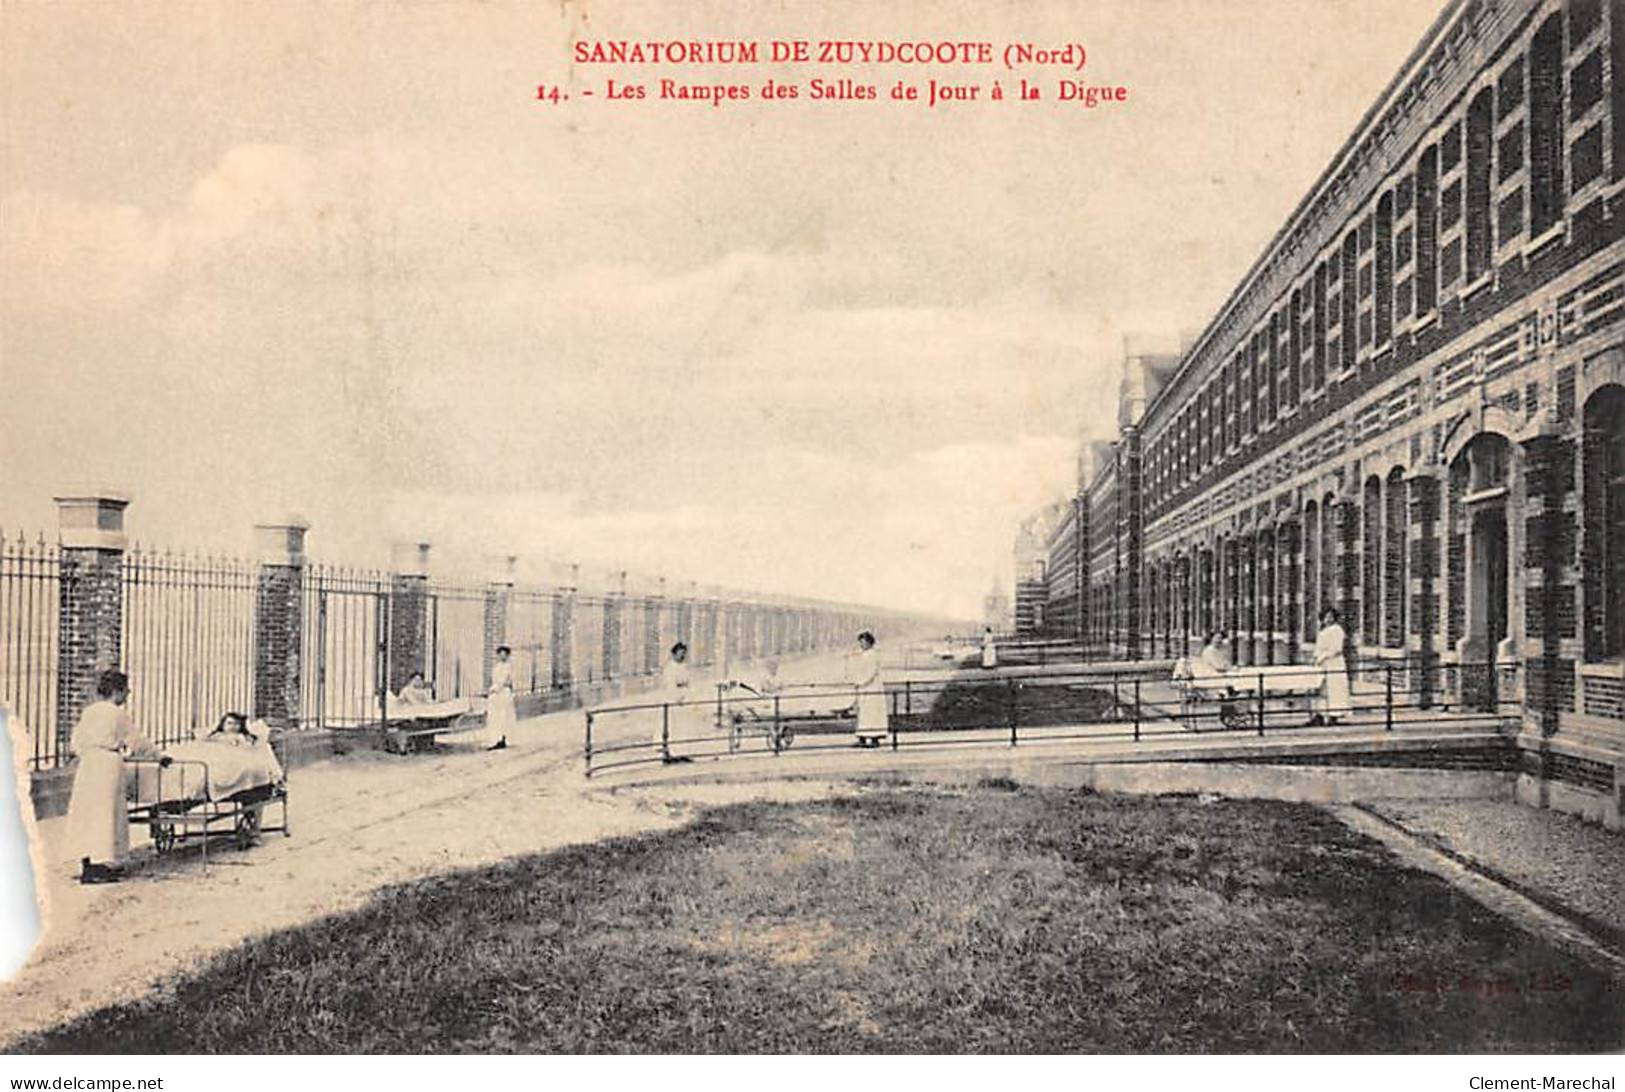 Sanatorium de ZUYDCOOTE - Les Rampes des Salles de Jour à la Digue - état